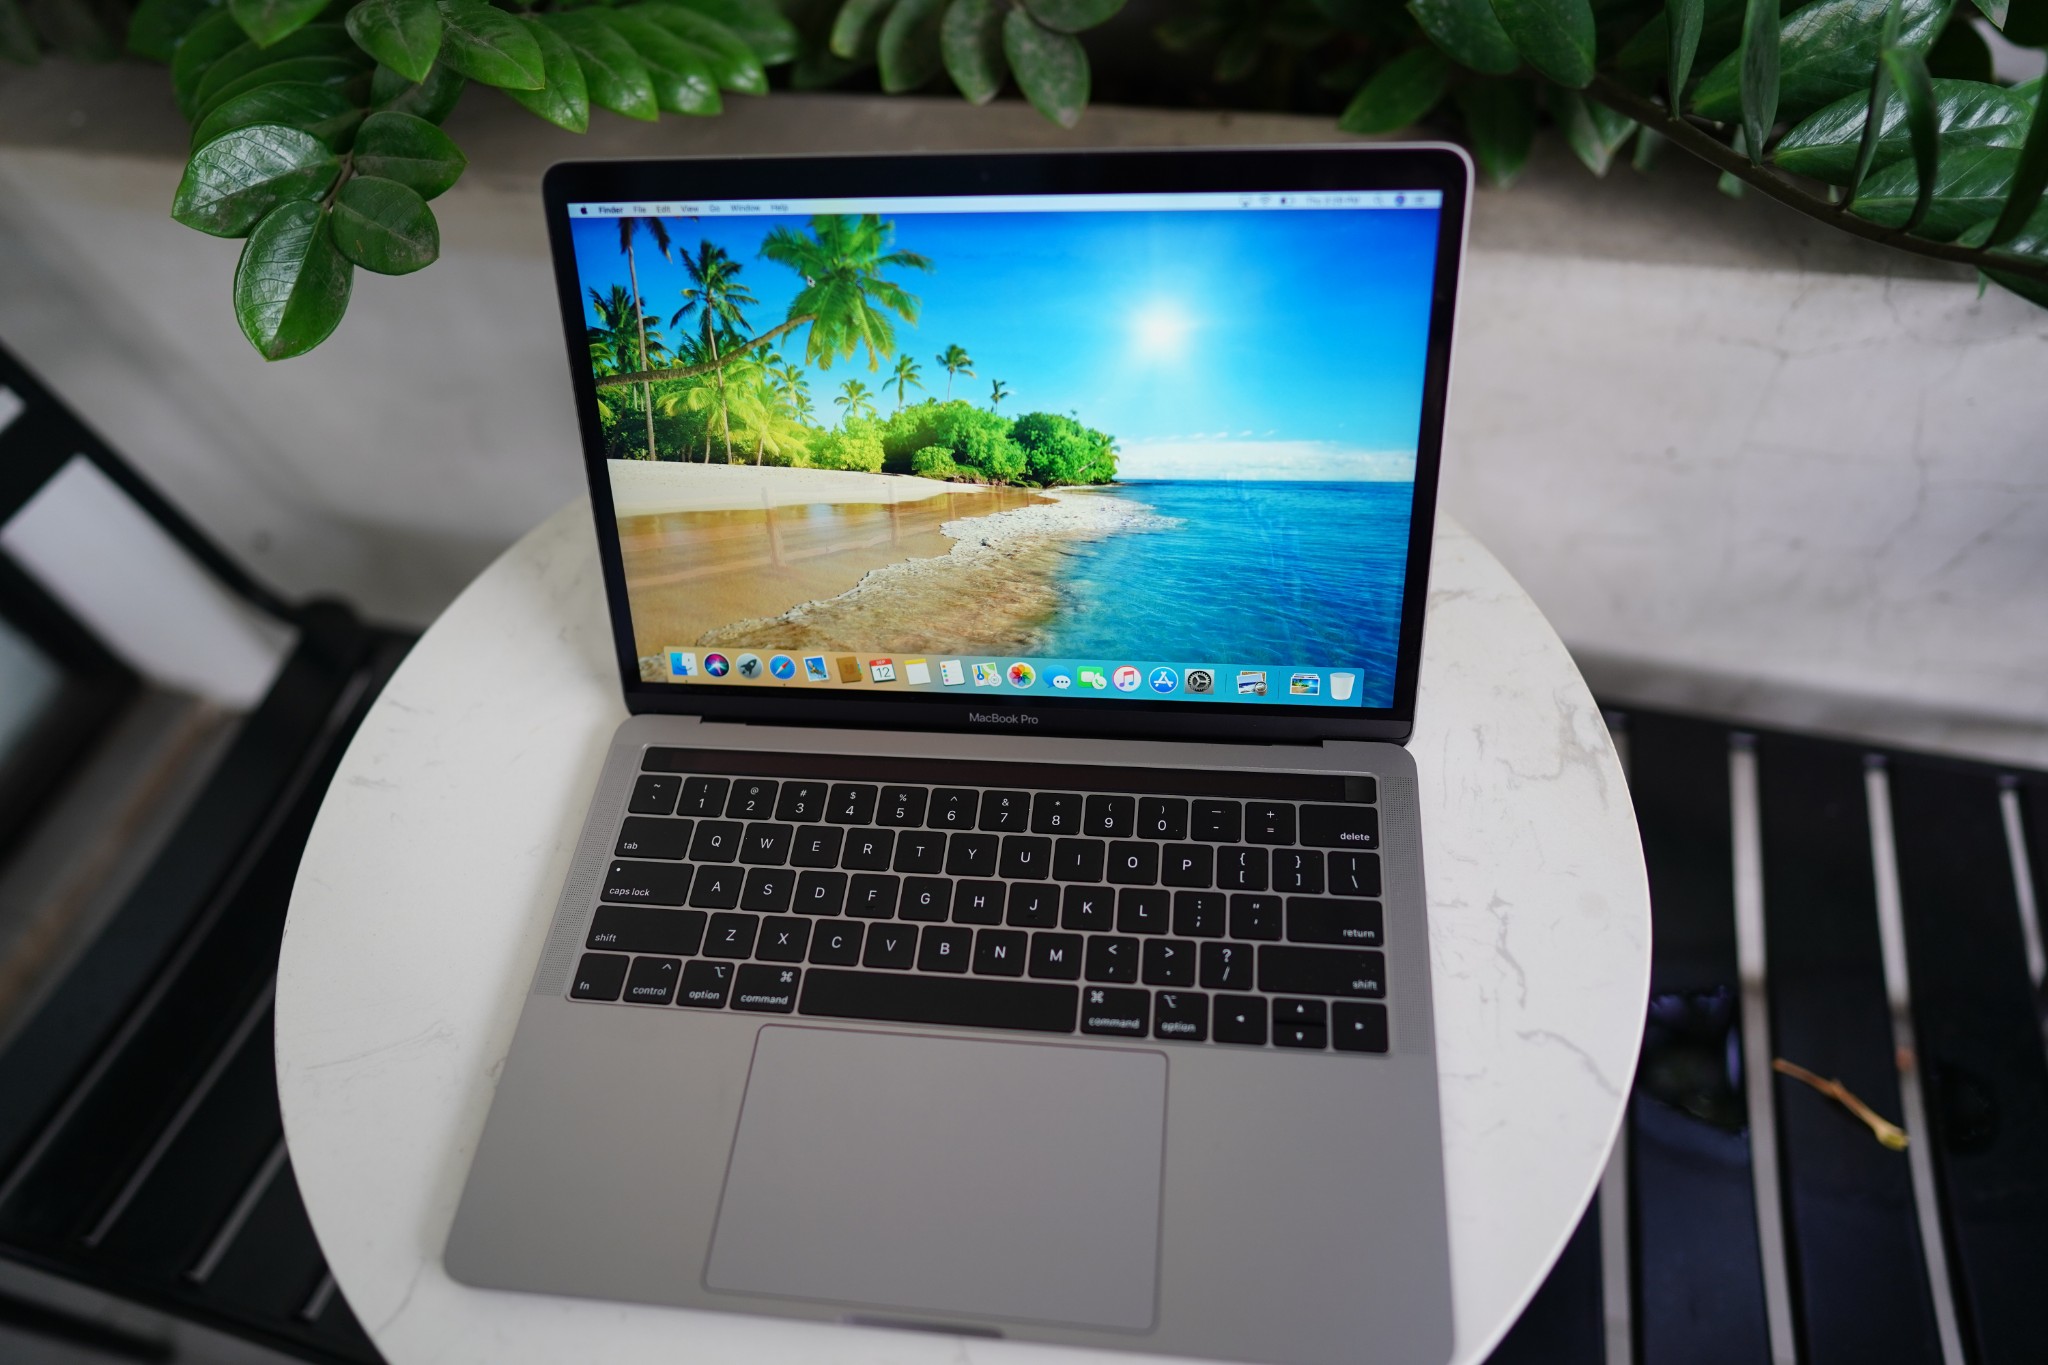 MacBook Pro 2017 MPXT2 8GB/256GB